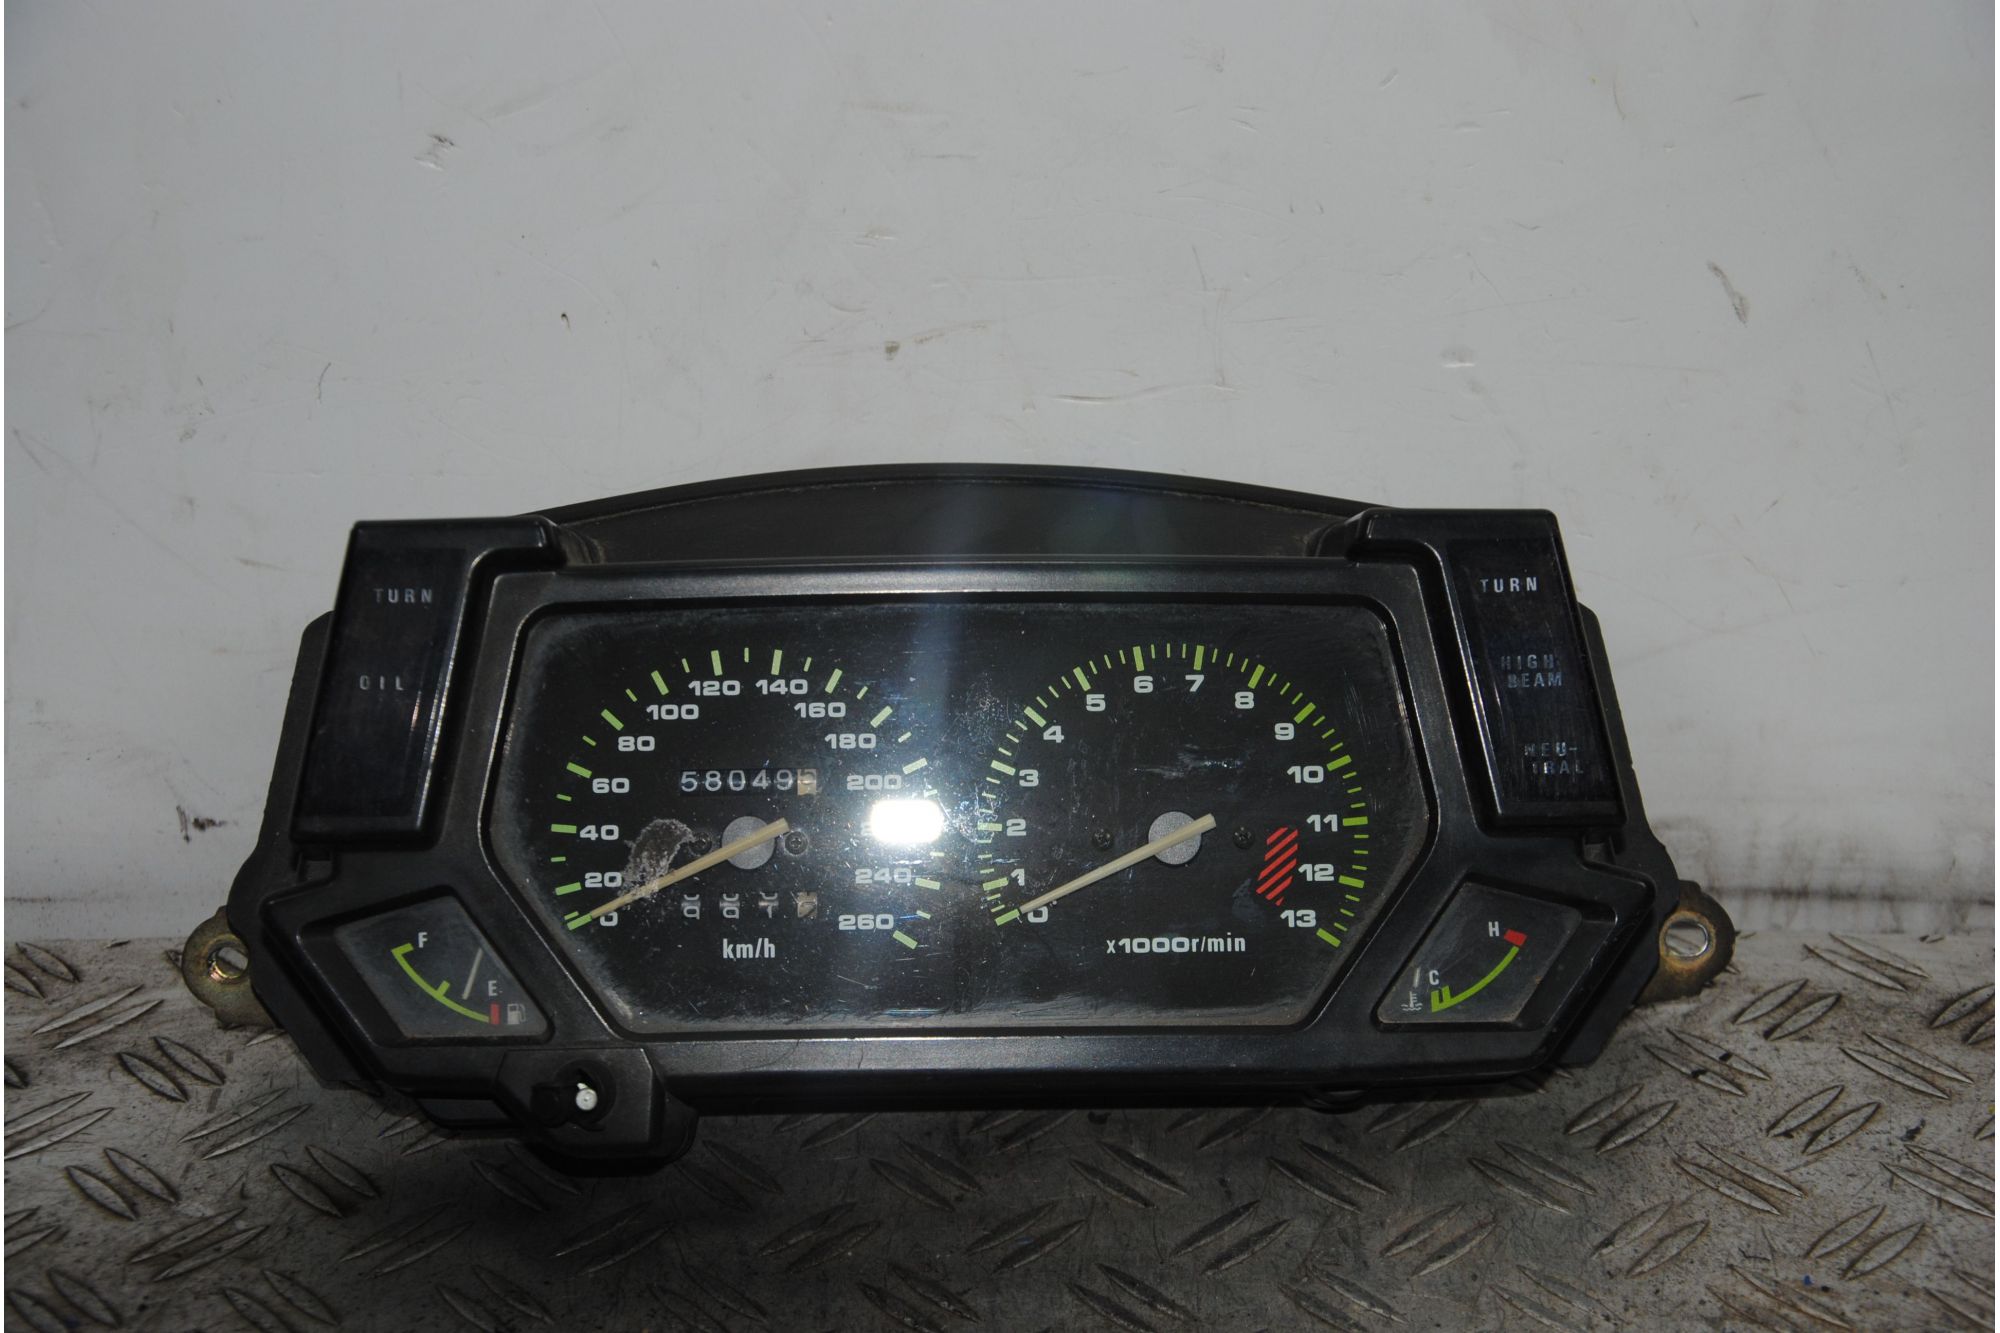 Strumentazione Contachilometri Kawasaki GPX 600 R dal 1988 al 1989 KM 58049  1694168626302